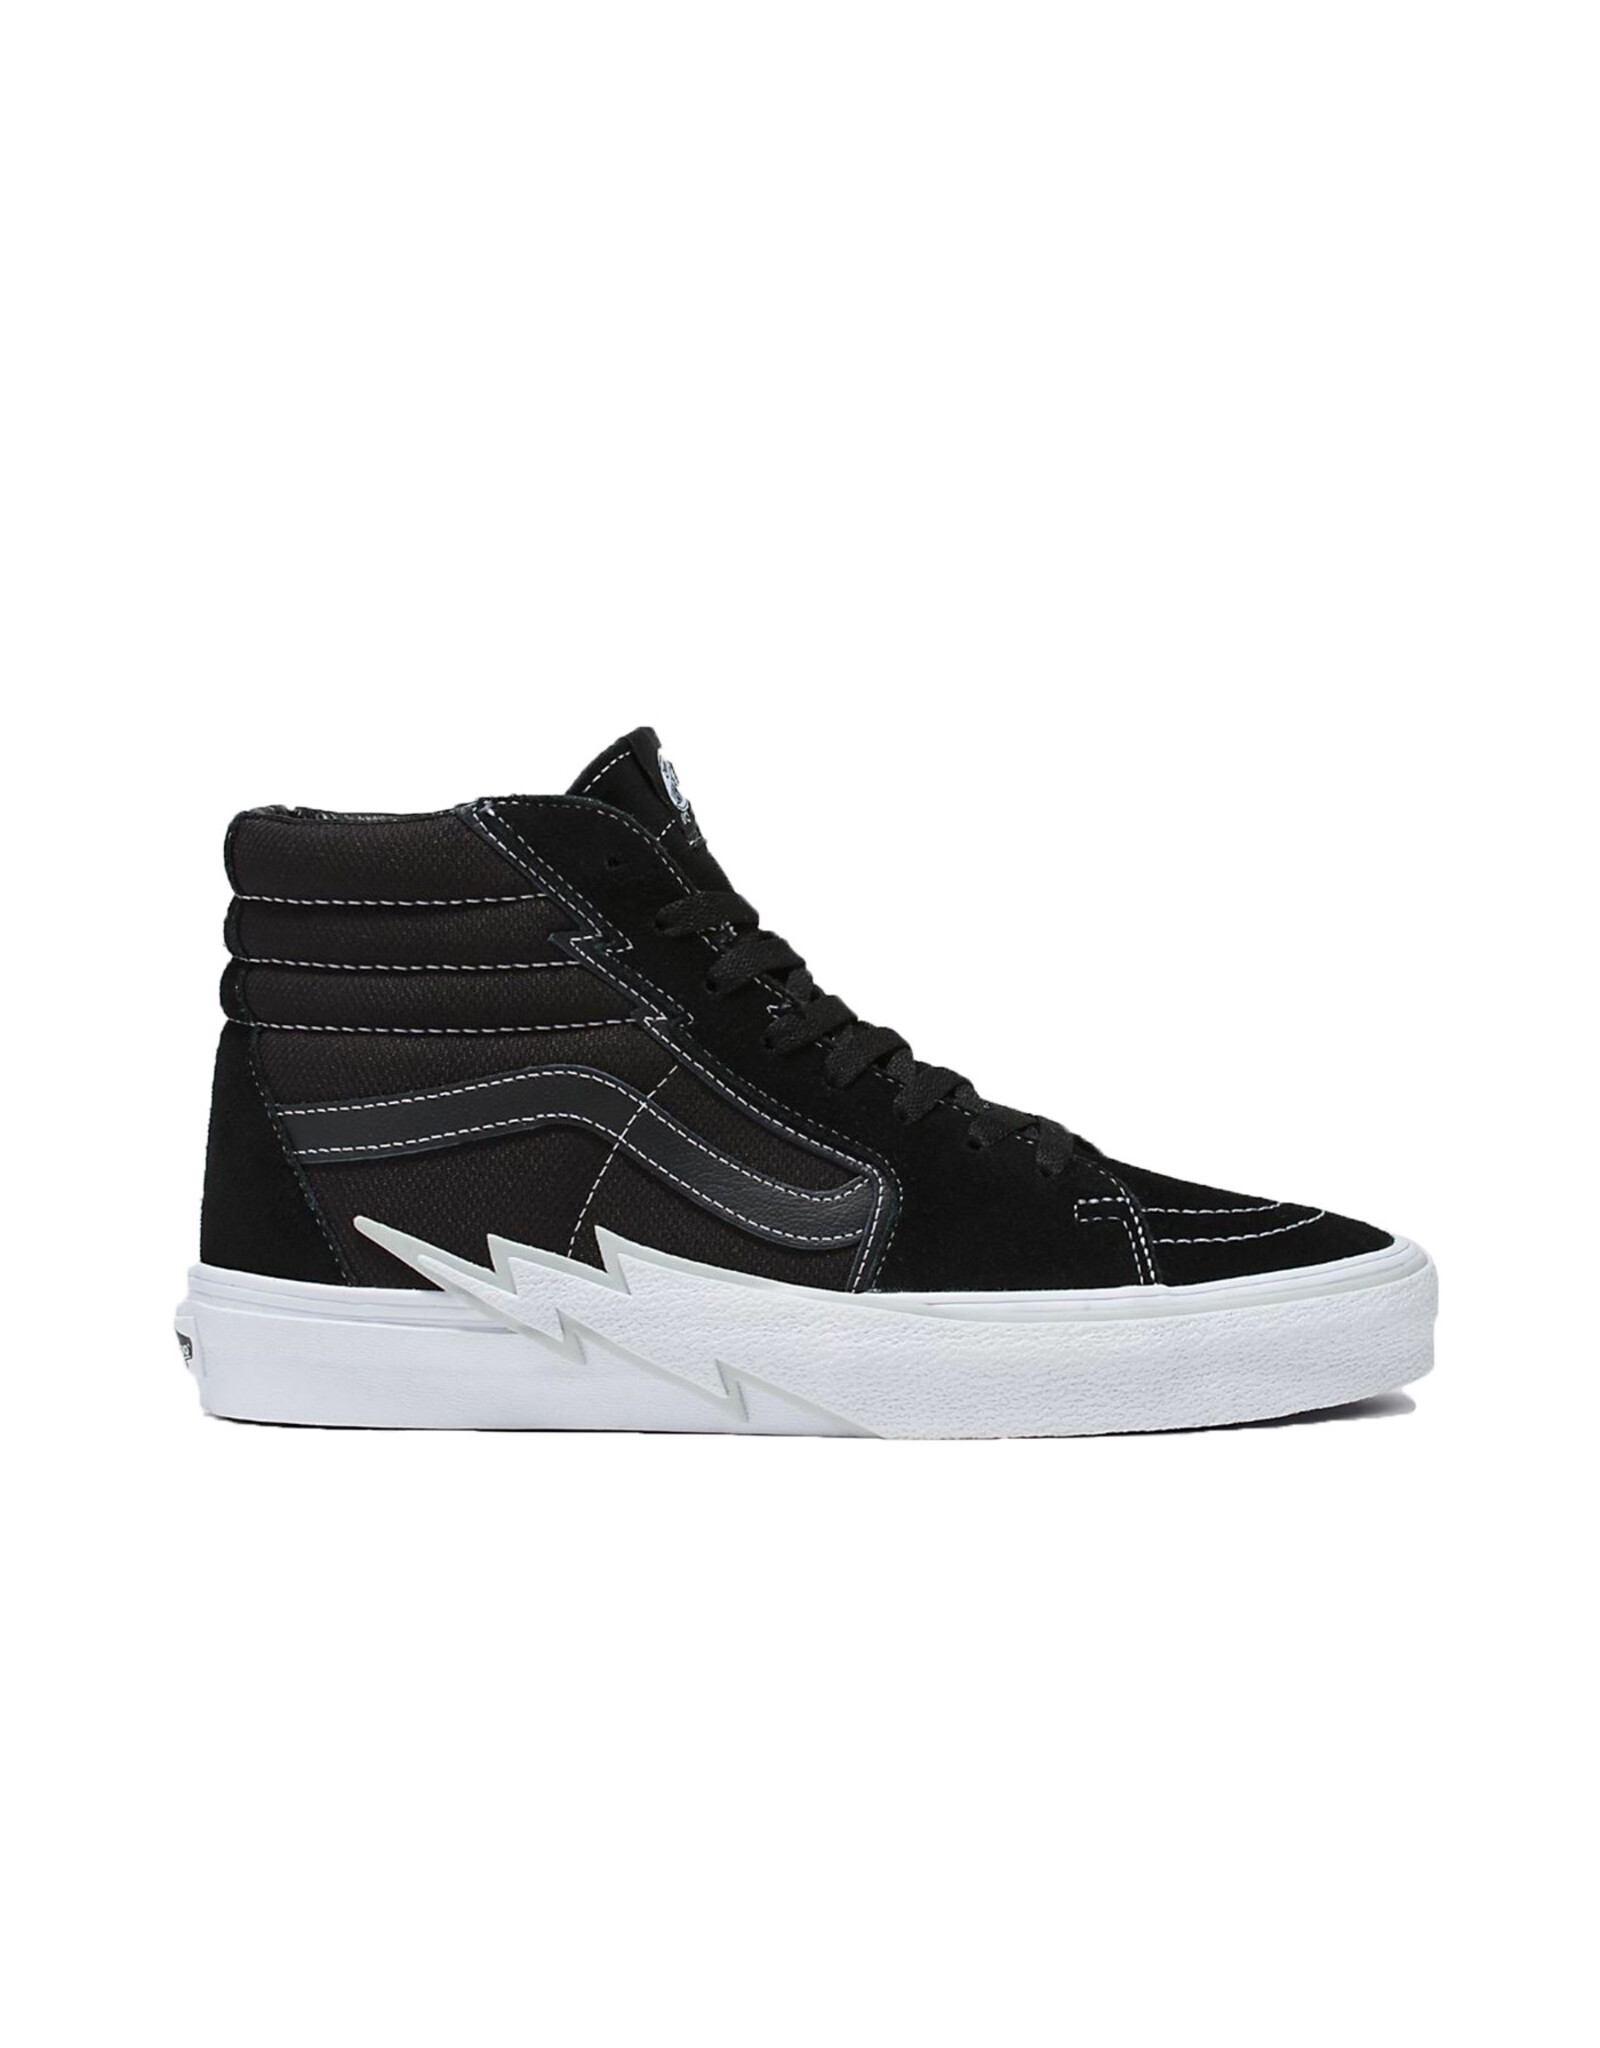 Shop Vans BMX Old Skool Shoes (black grey white) online